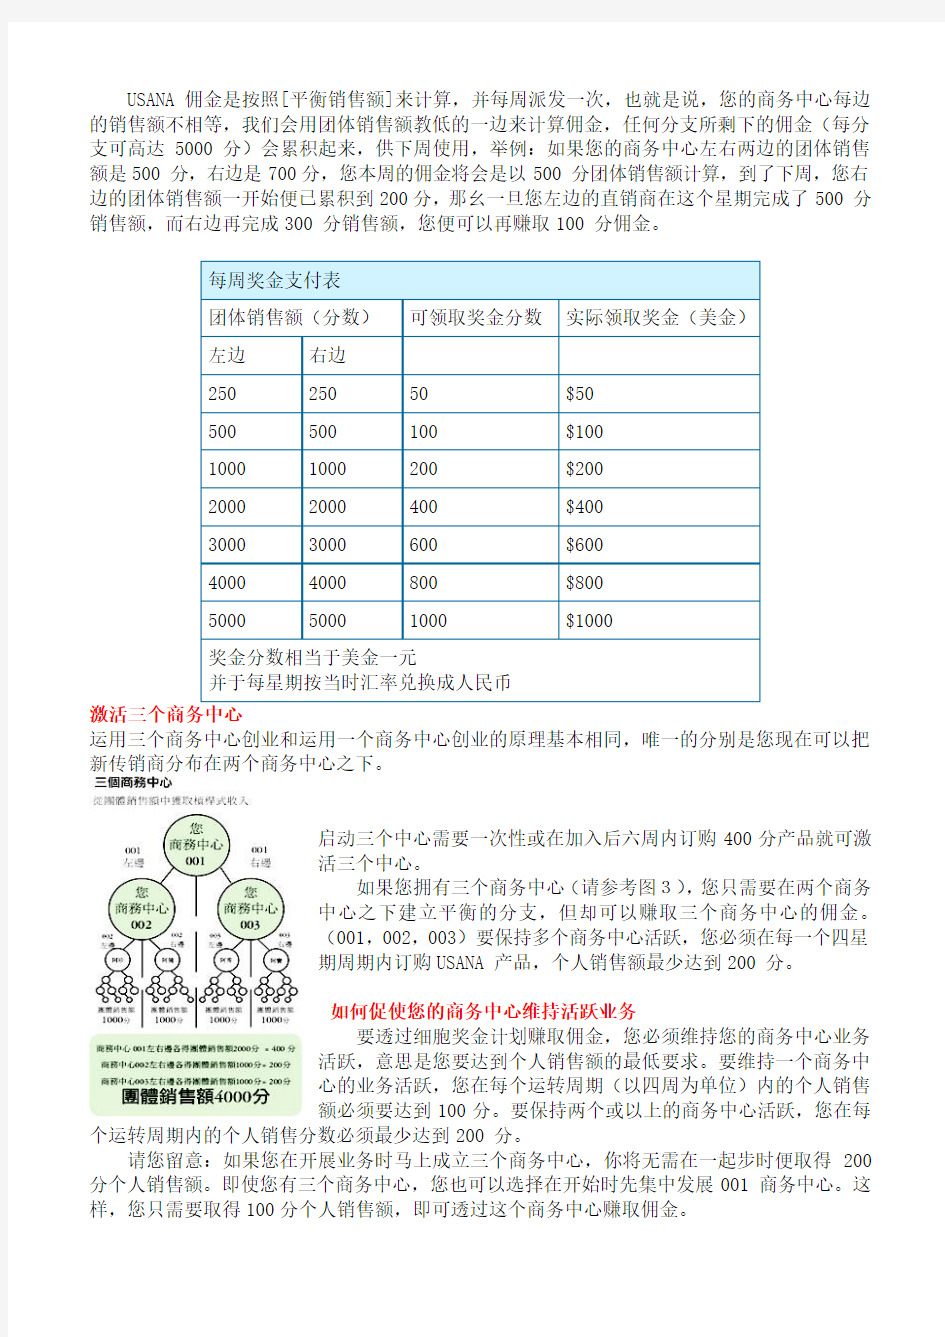 2015年葆婴公司奖金制度详解(更新版)